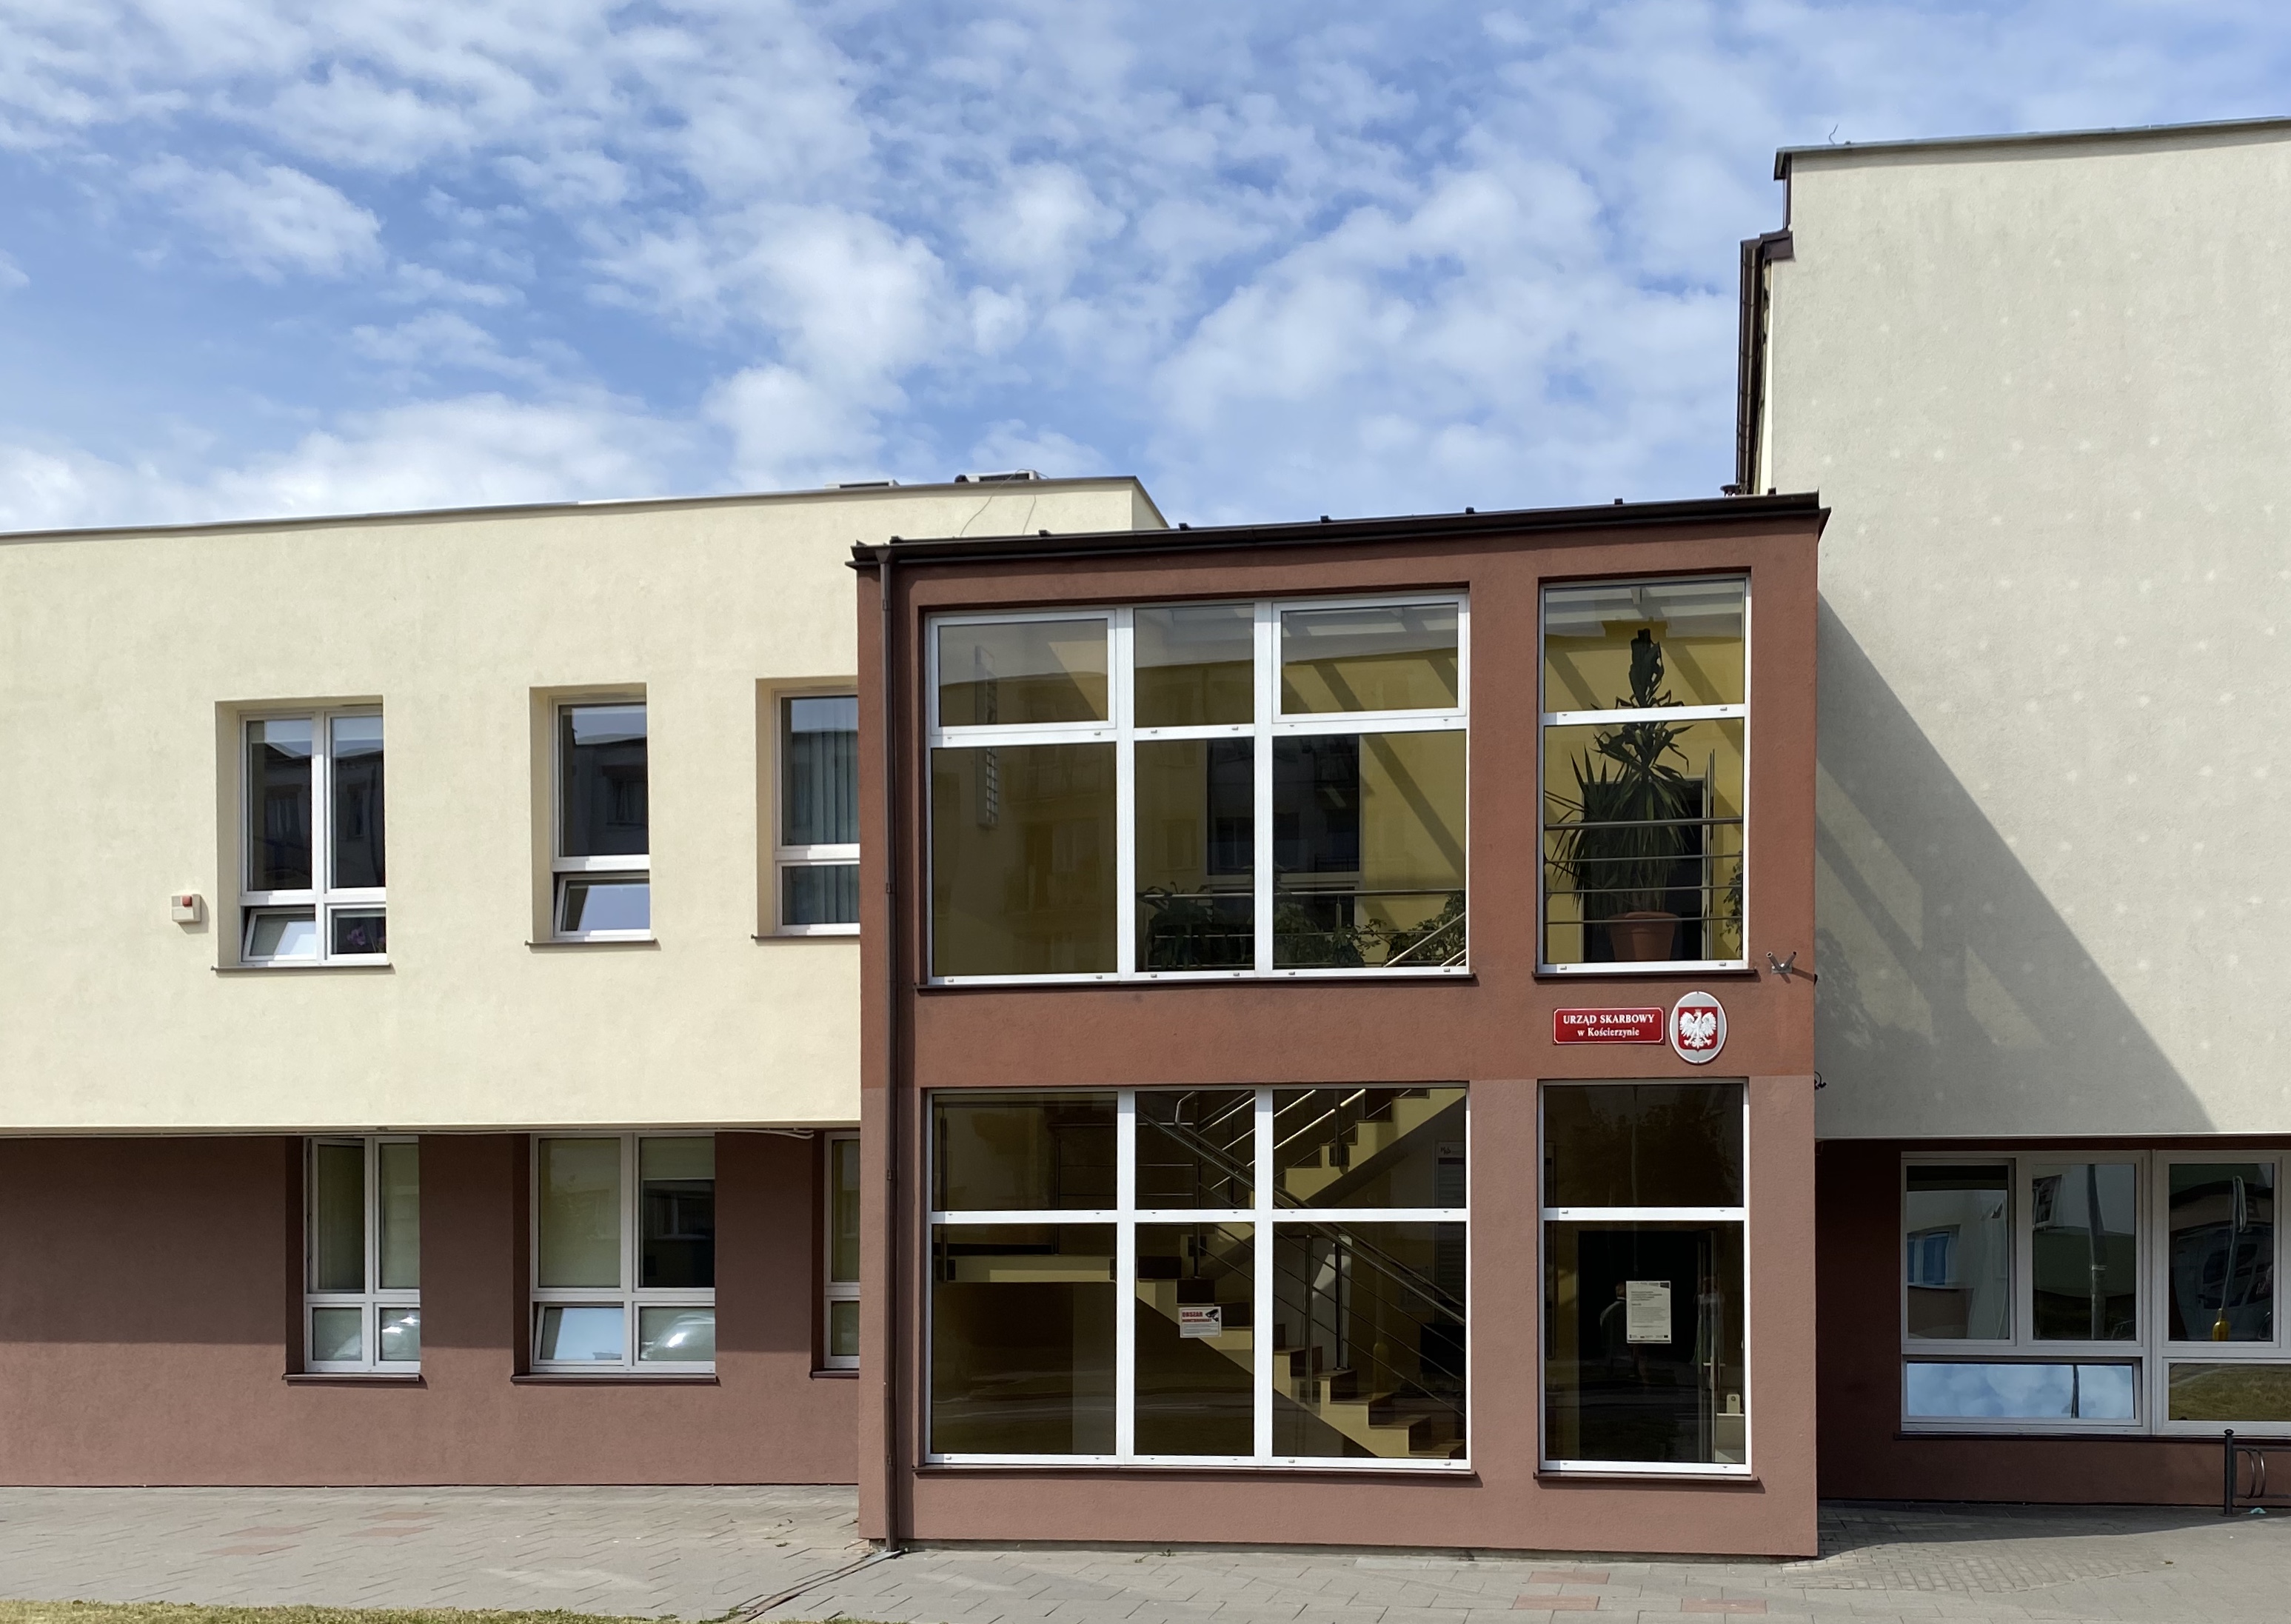 Wejście do budynku, w którym znajduje się siedziba Urzędu Skarbowego w Kościerzynie. Elewacja w kolorze brązowym.